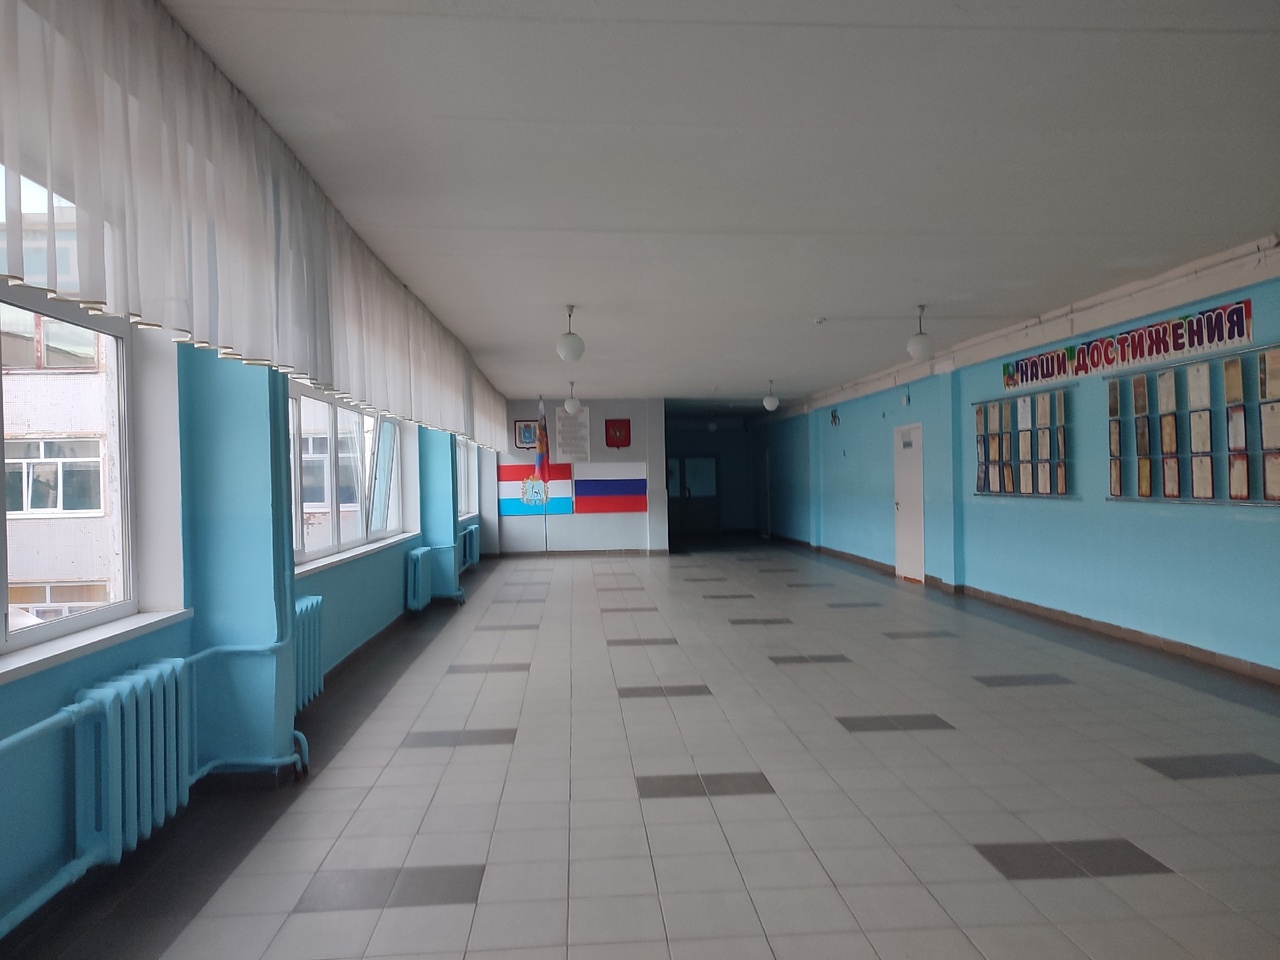  В Самарской области проверяют подготовку школ к новому учебному году 